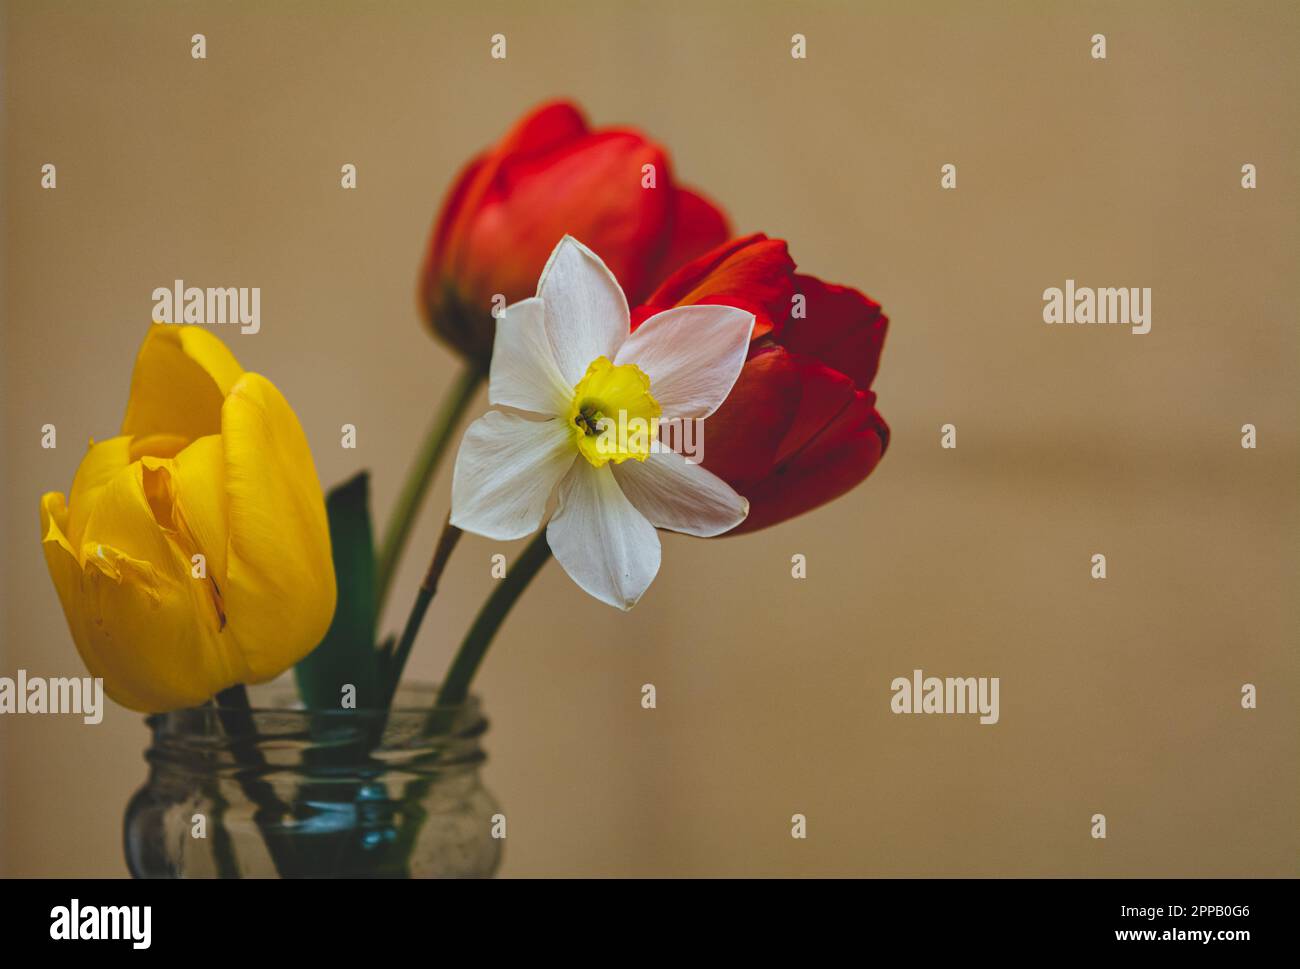 Narciso e tulipani in un vaso di vetro su sfondo giallo, scuro e moody, profondità di campo bassa, fuoco selettivo Foto Stock